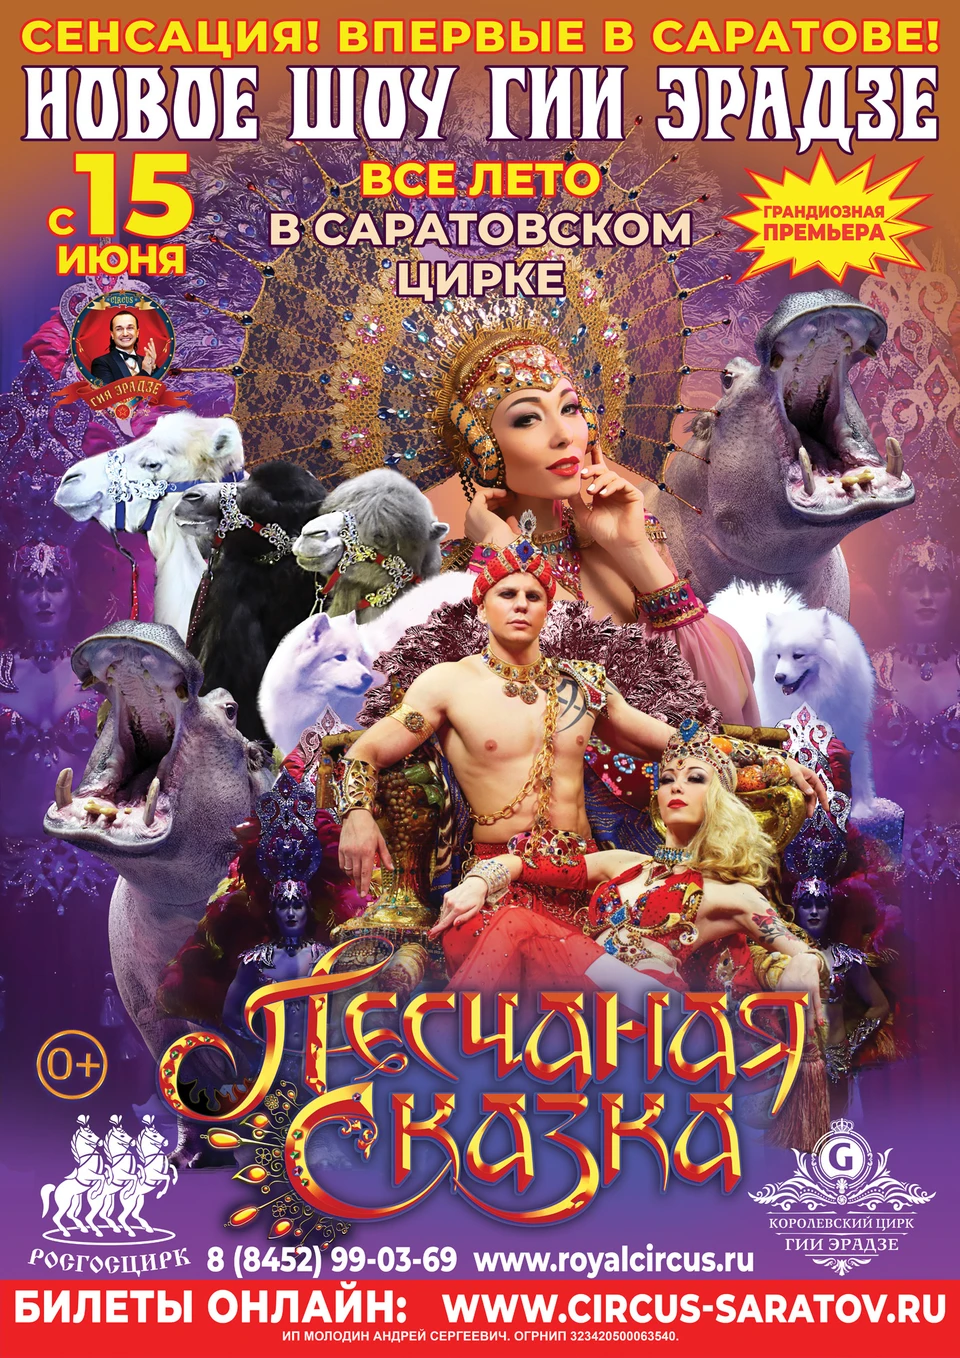 В составе невероятного шоу уникальные номера от обладателей высших наград российских и мировых фестивалей циркового искусства